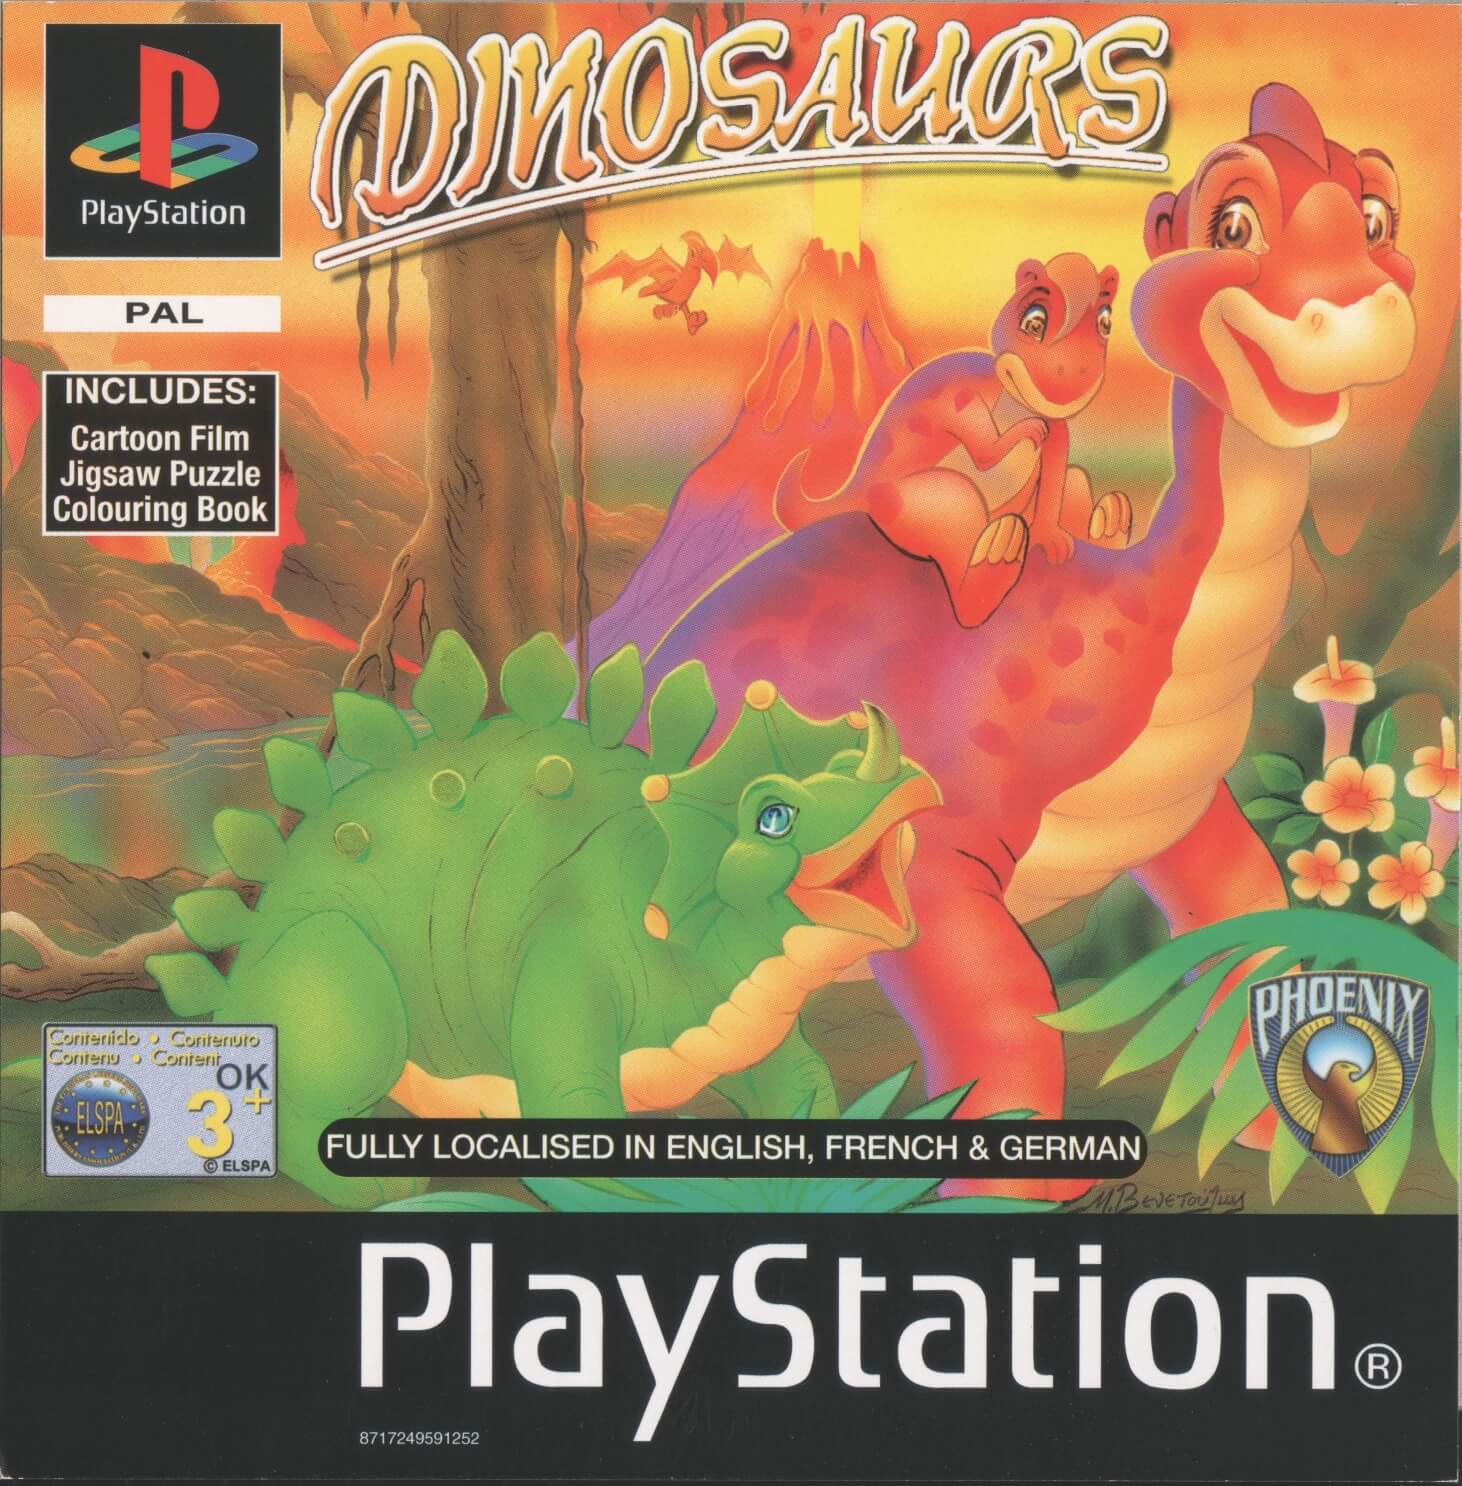 Игры динозавр 1. Игра на плейстейшен про динозавров. Сони плейстейшен 1 игра про динозавров. Игра ПС 1 Dinosaurs Adventure. Игра с динозаврами Sony PLAYSTATION 2.